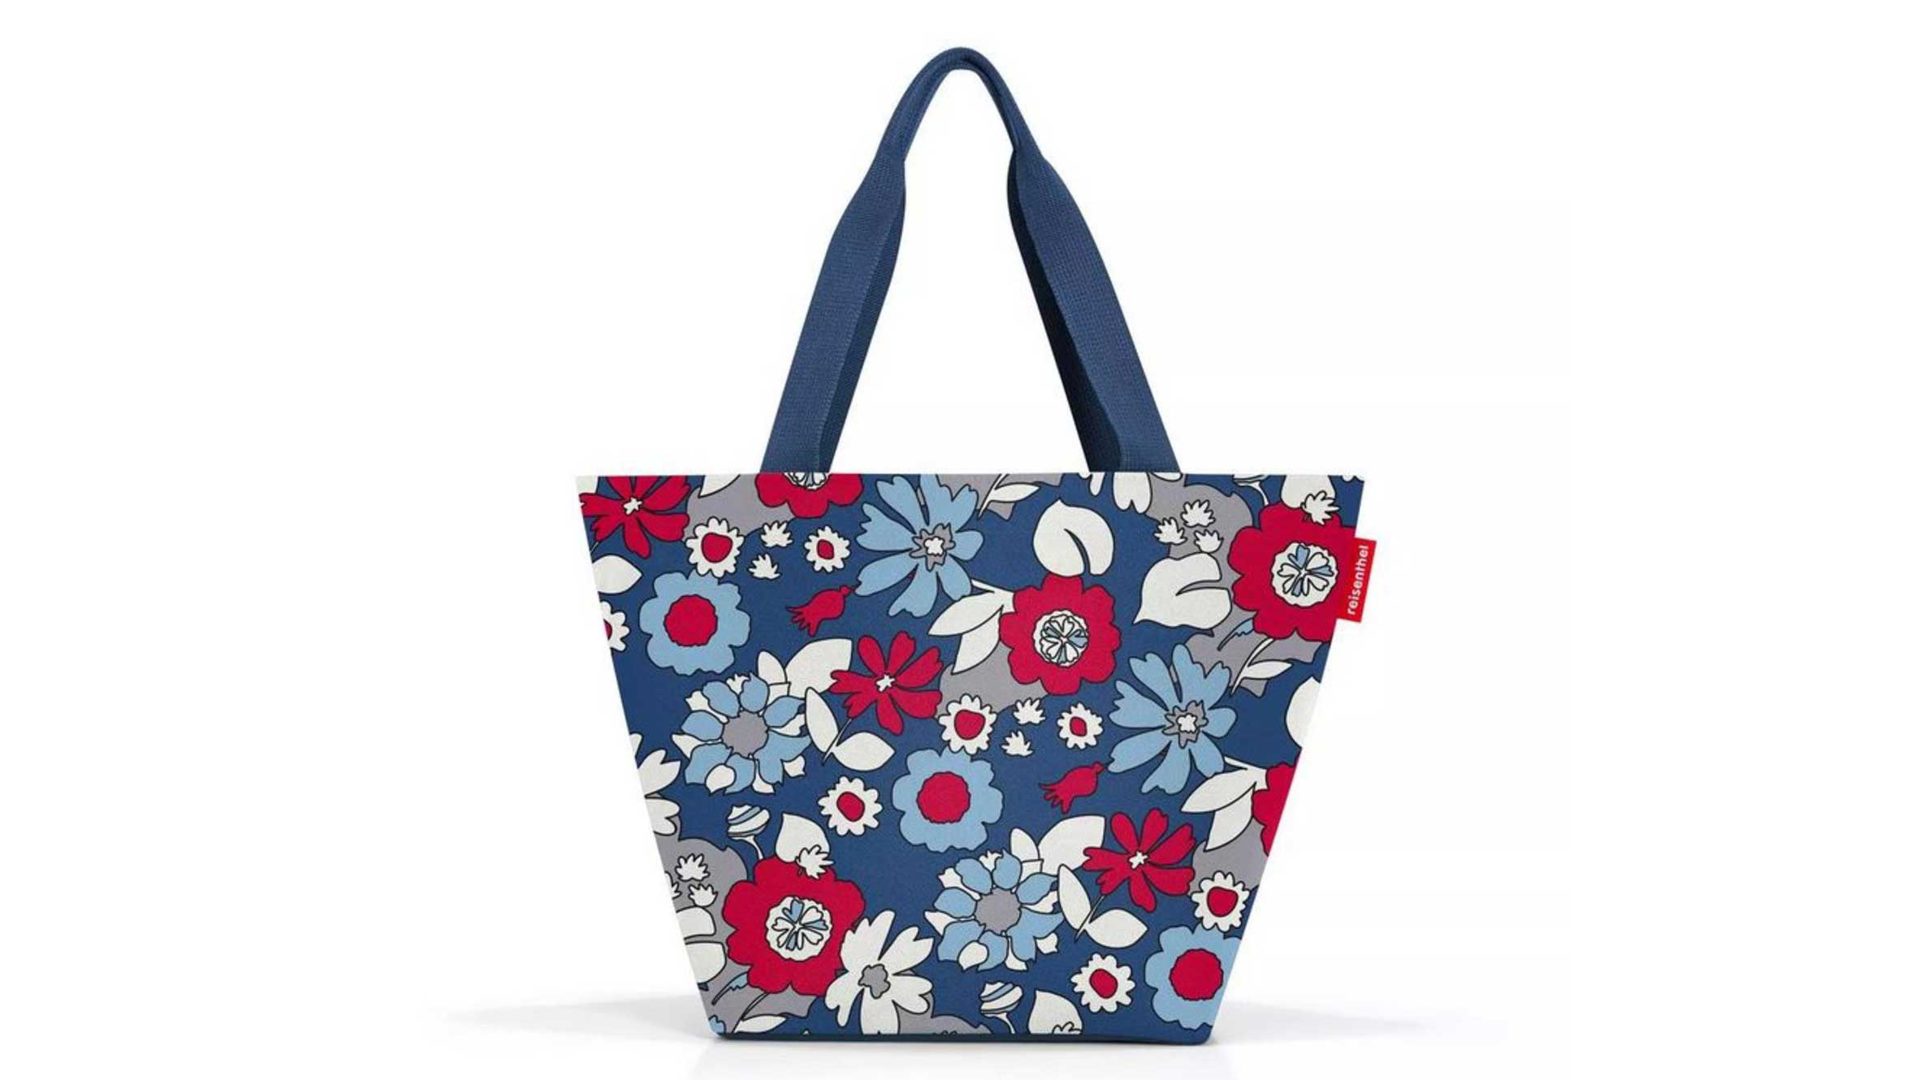 Einzeltasche Reisenthel aus Kunstfaser in Mehrfarbig Reisenthel Shopper Tasche mit Reissverschluss florist indigo, 51 x 30,5 x 26 cm